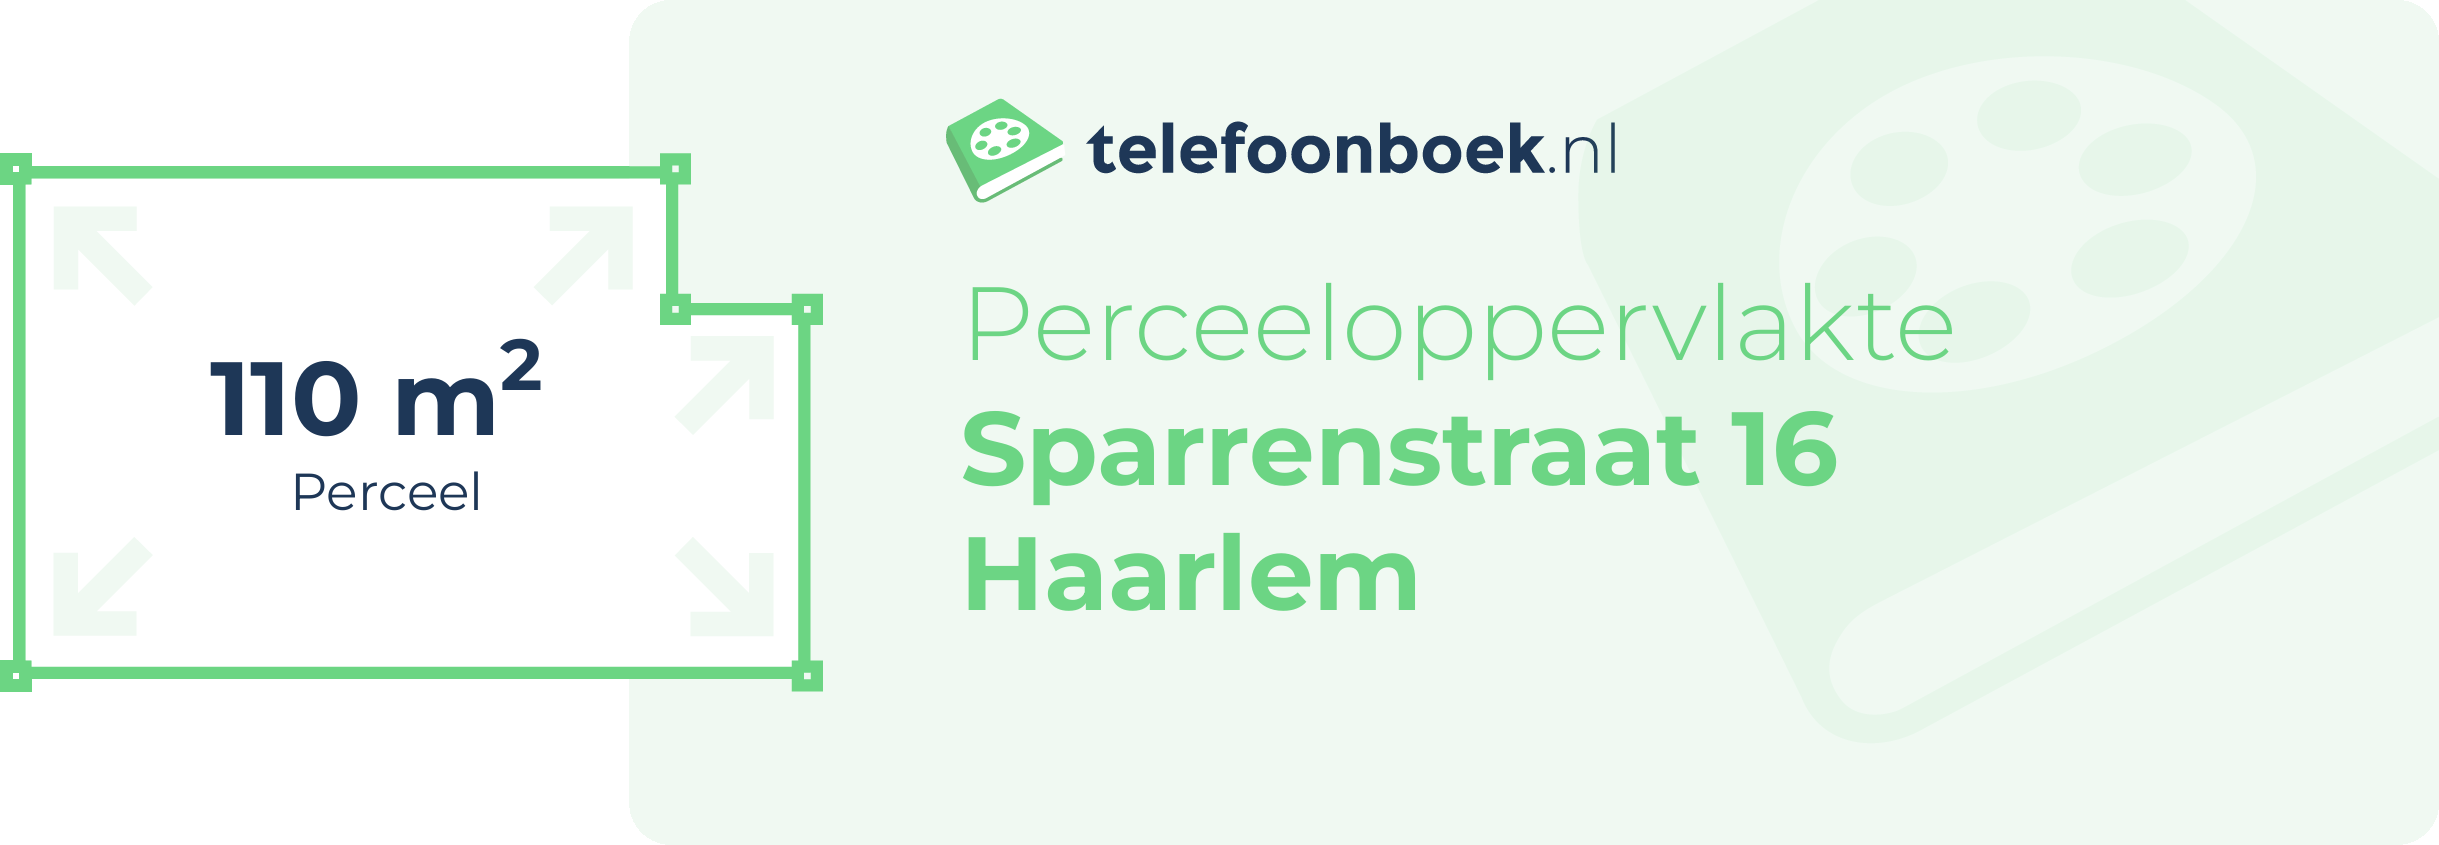 Perceeloppervlakte Sparrenstraat 16 Haarlem